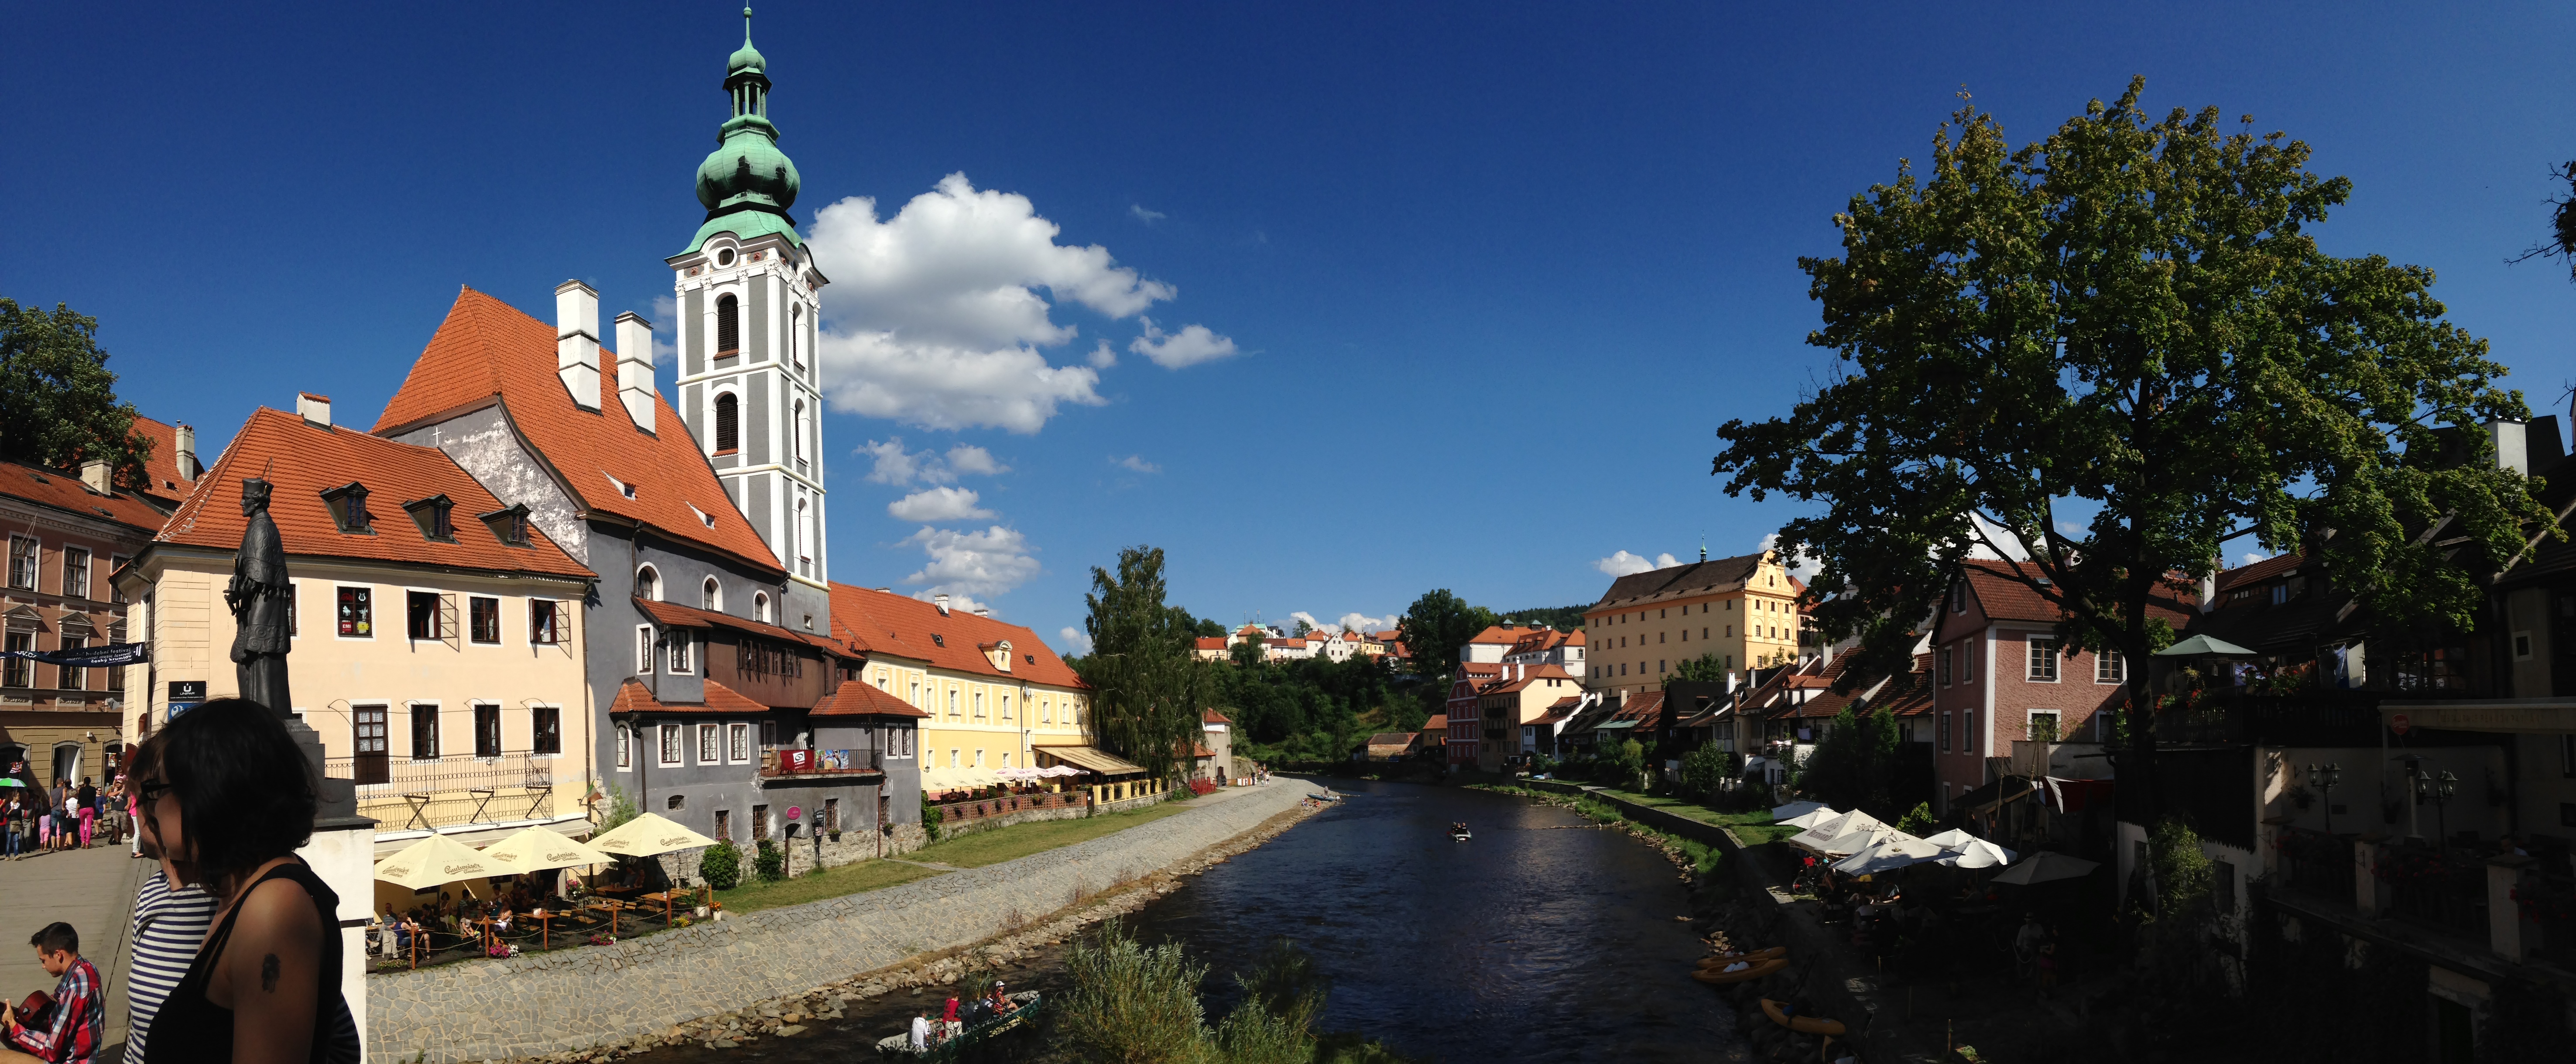 情迷东欧——迷人的小镇 克鲁姆洛夫 克鲁姆洛夫是捷克共和国的一个小城镇，有14,100名居民，位于南